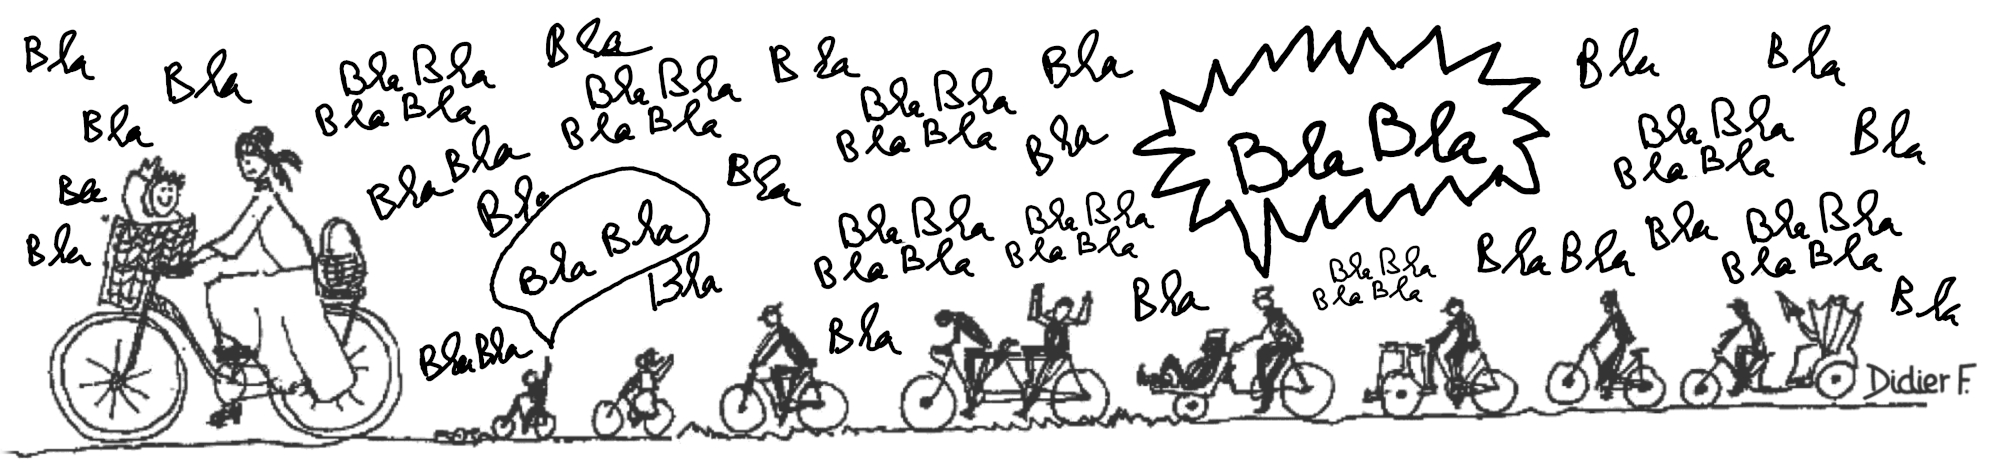 Dessin de vélos en tous genres avec cyclistes discutant (texte: bla bla bla etc.)